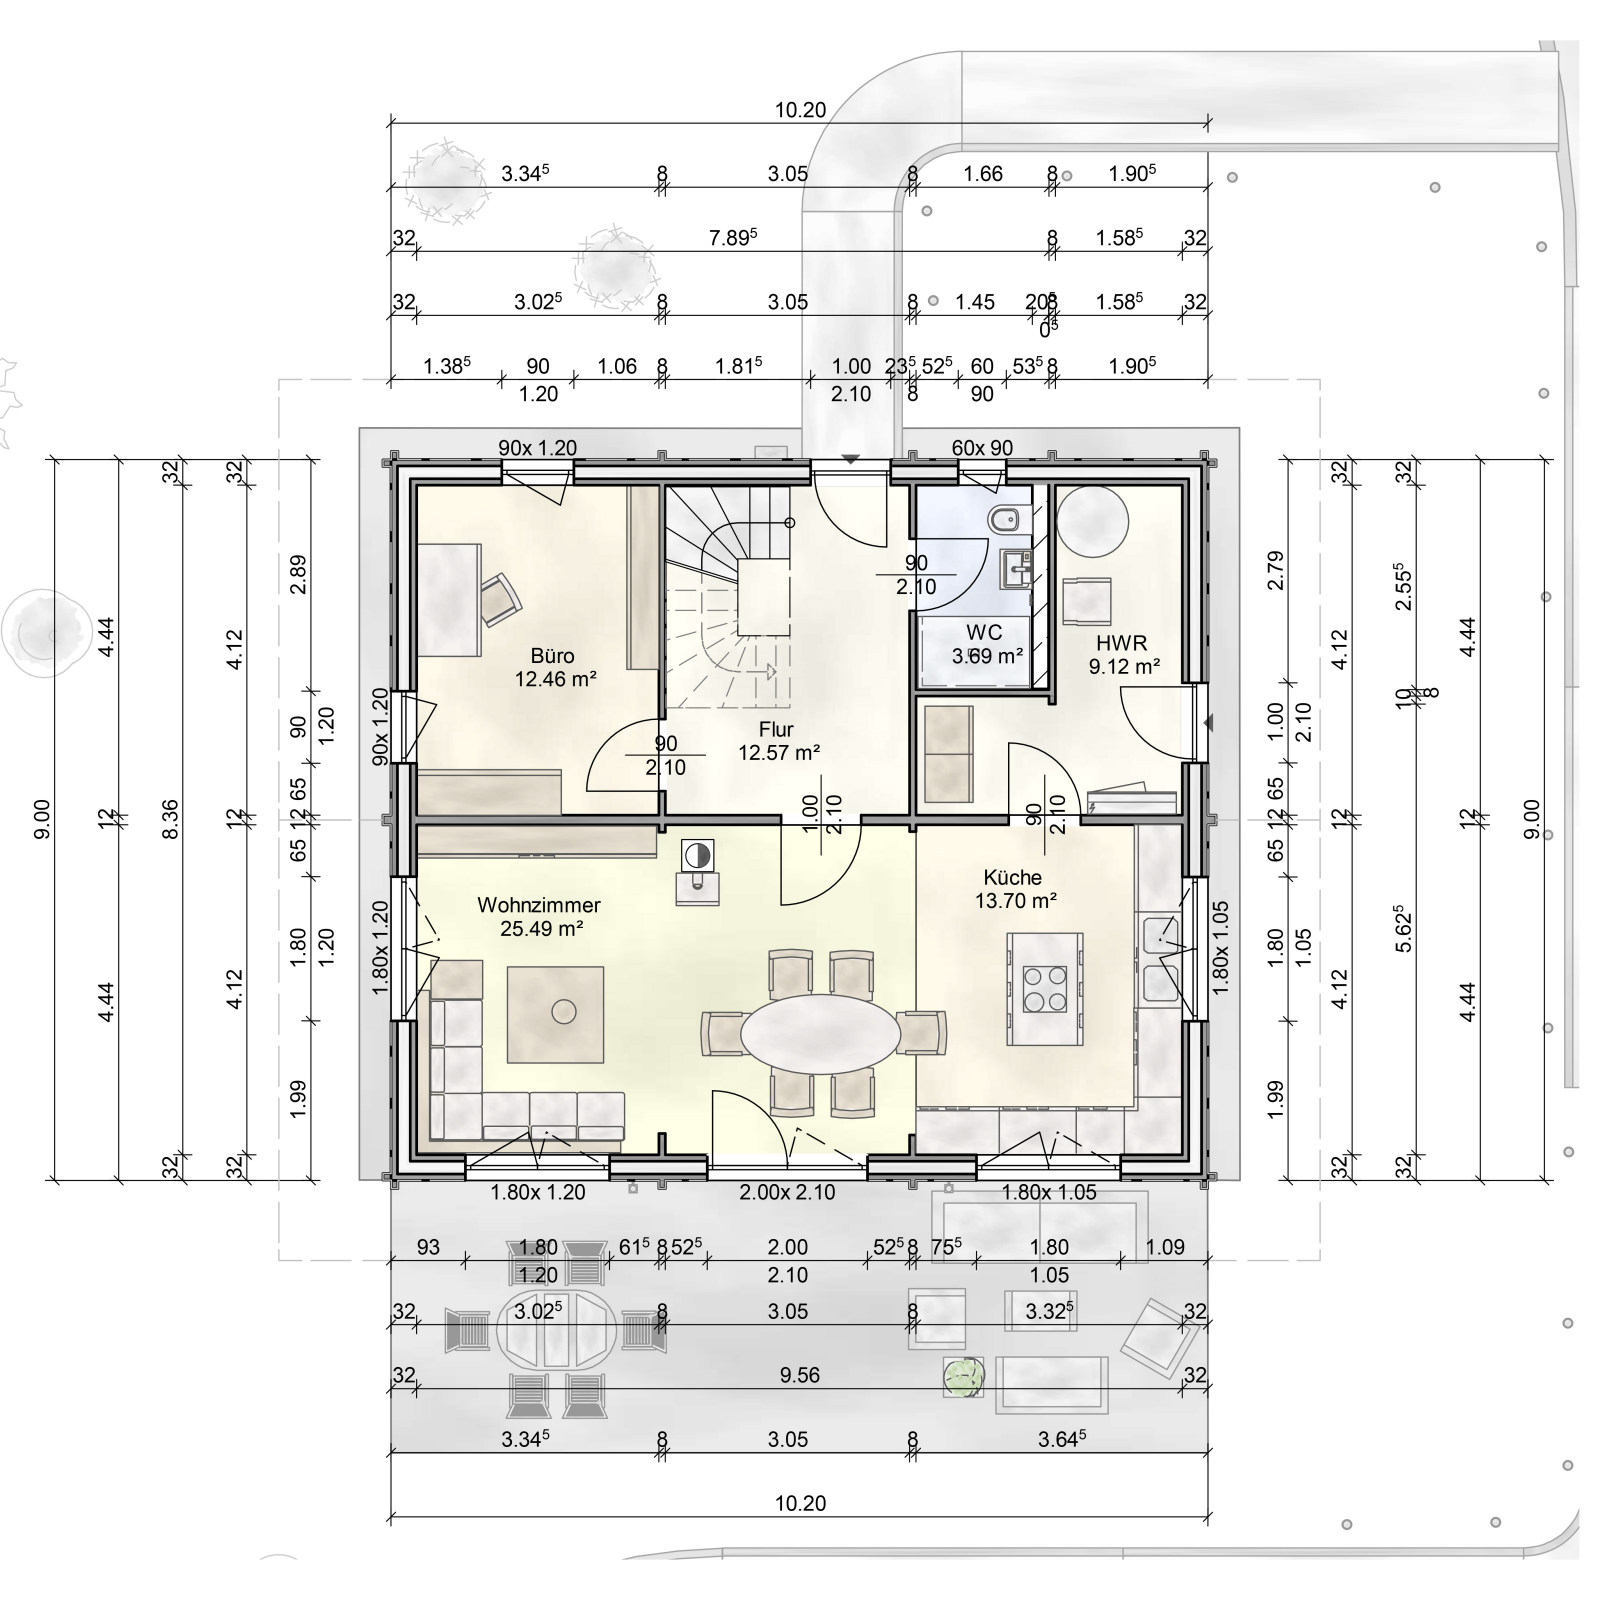 Grundriss des FINNHOLZ Jubiläumshauses Eder 131 mit einer Fläche von 131qm, inklusive Wohnzimmer, Küche, Büro und weiteren Räumen.